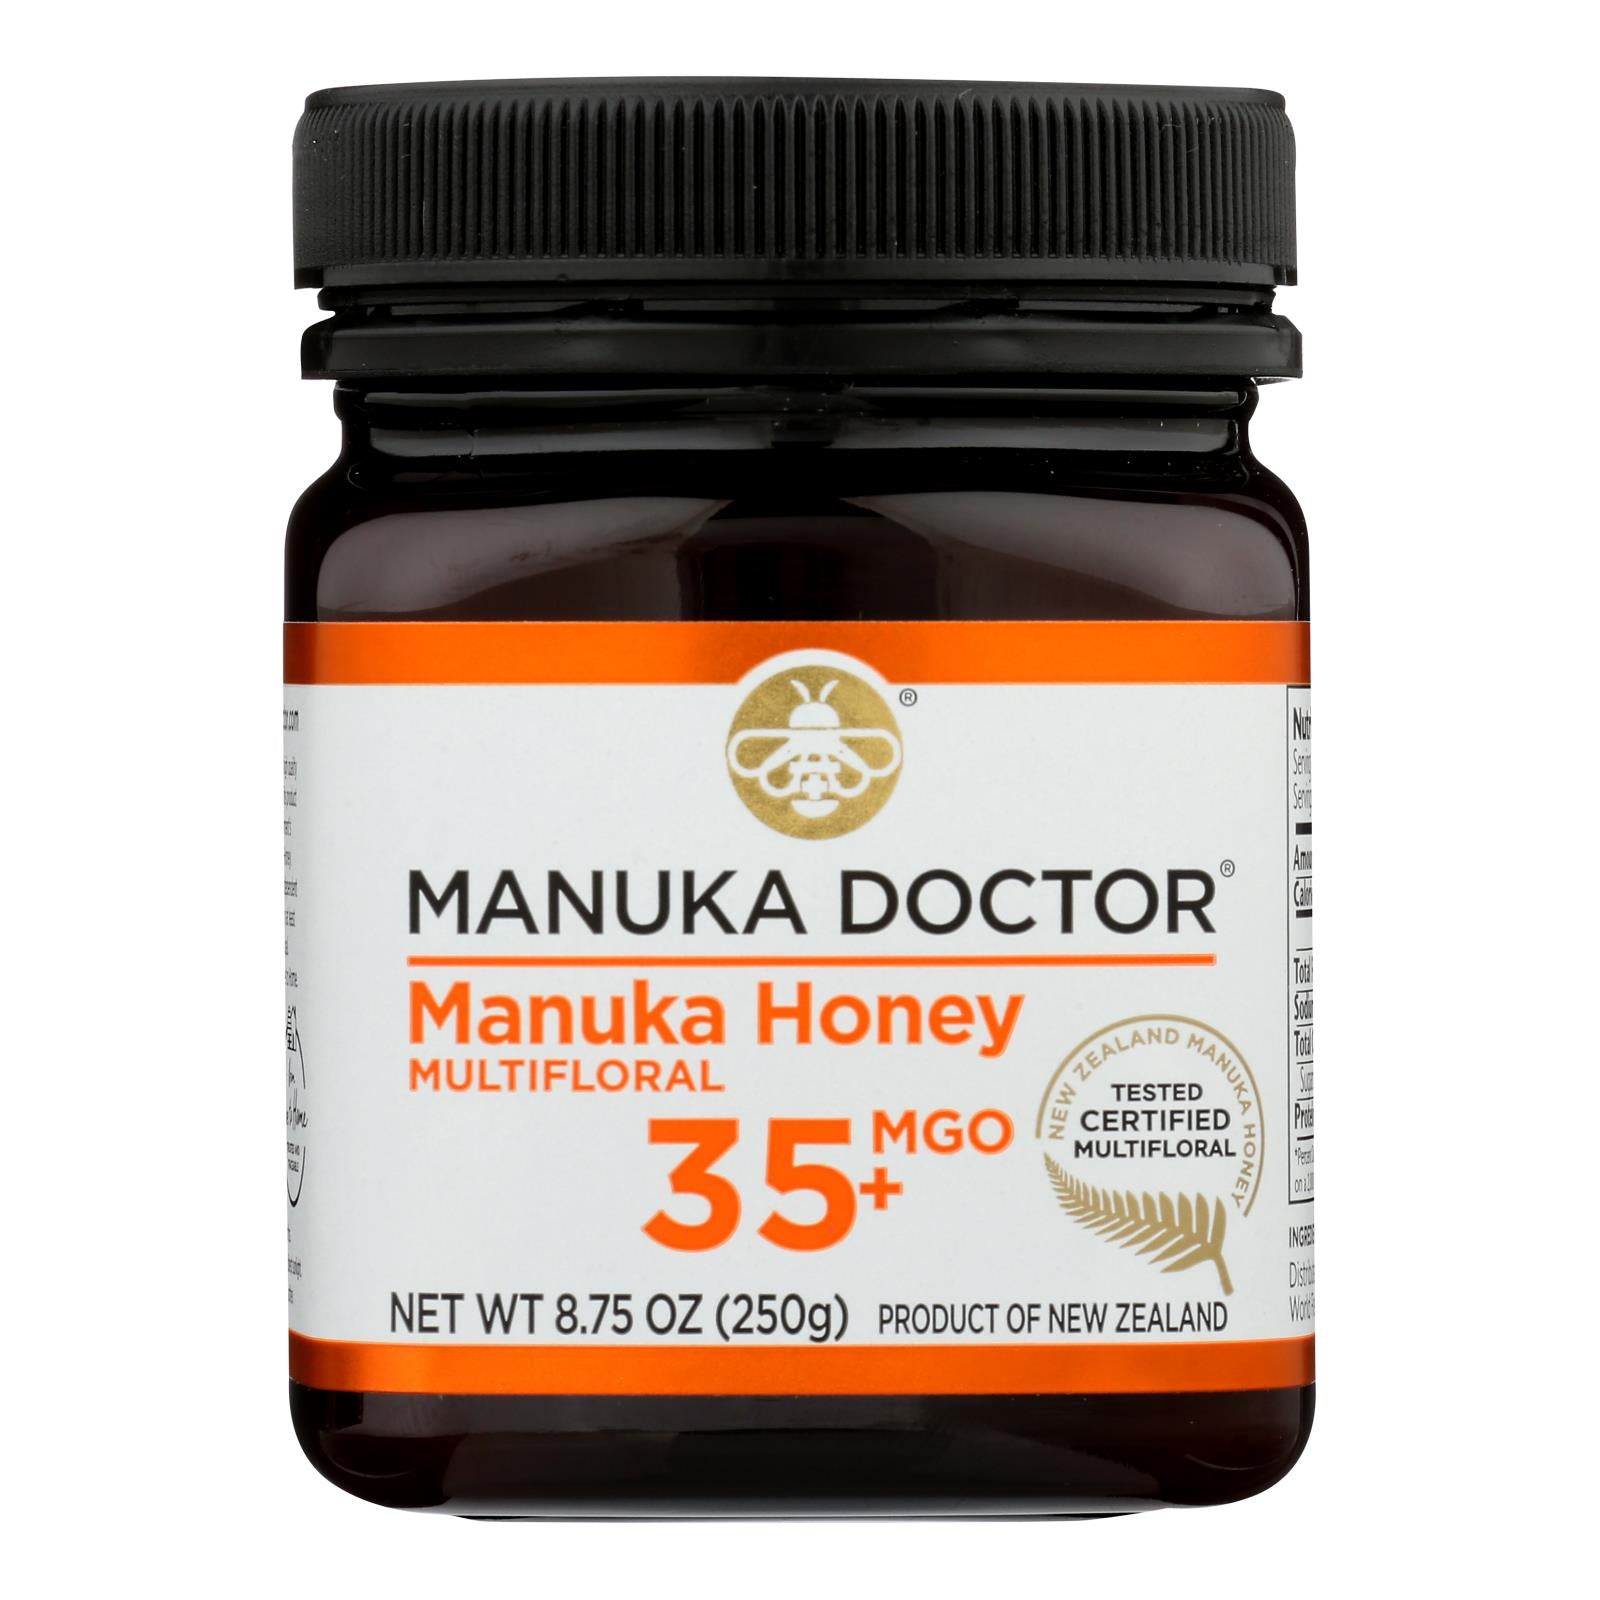 Docteur Manuka, Manuka Doctor - Miel de Manuka Mf Mgo35+ 250g - Carton de 6-8.75 OZ (Pack de 6)